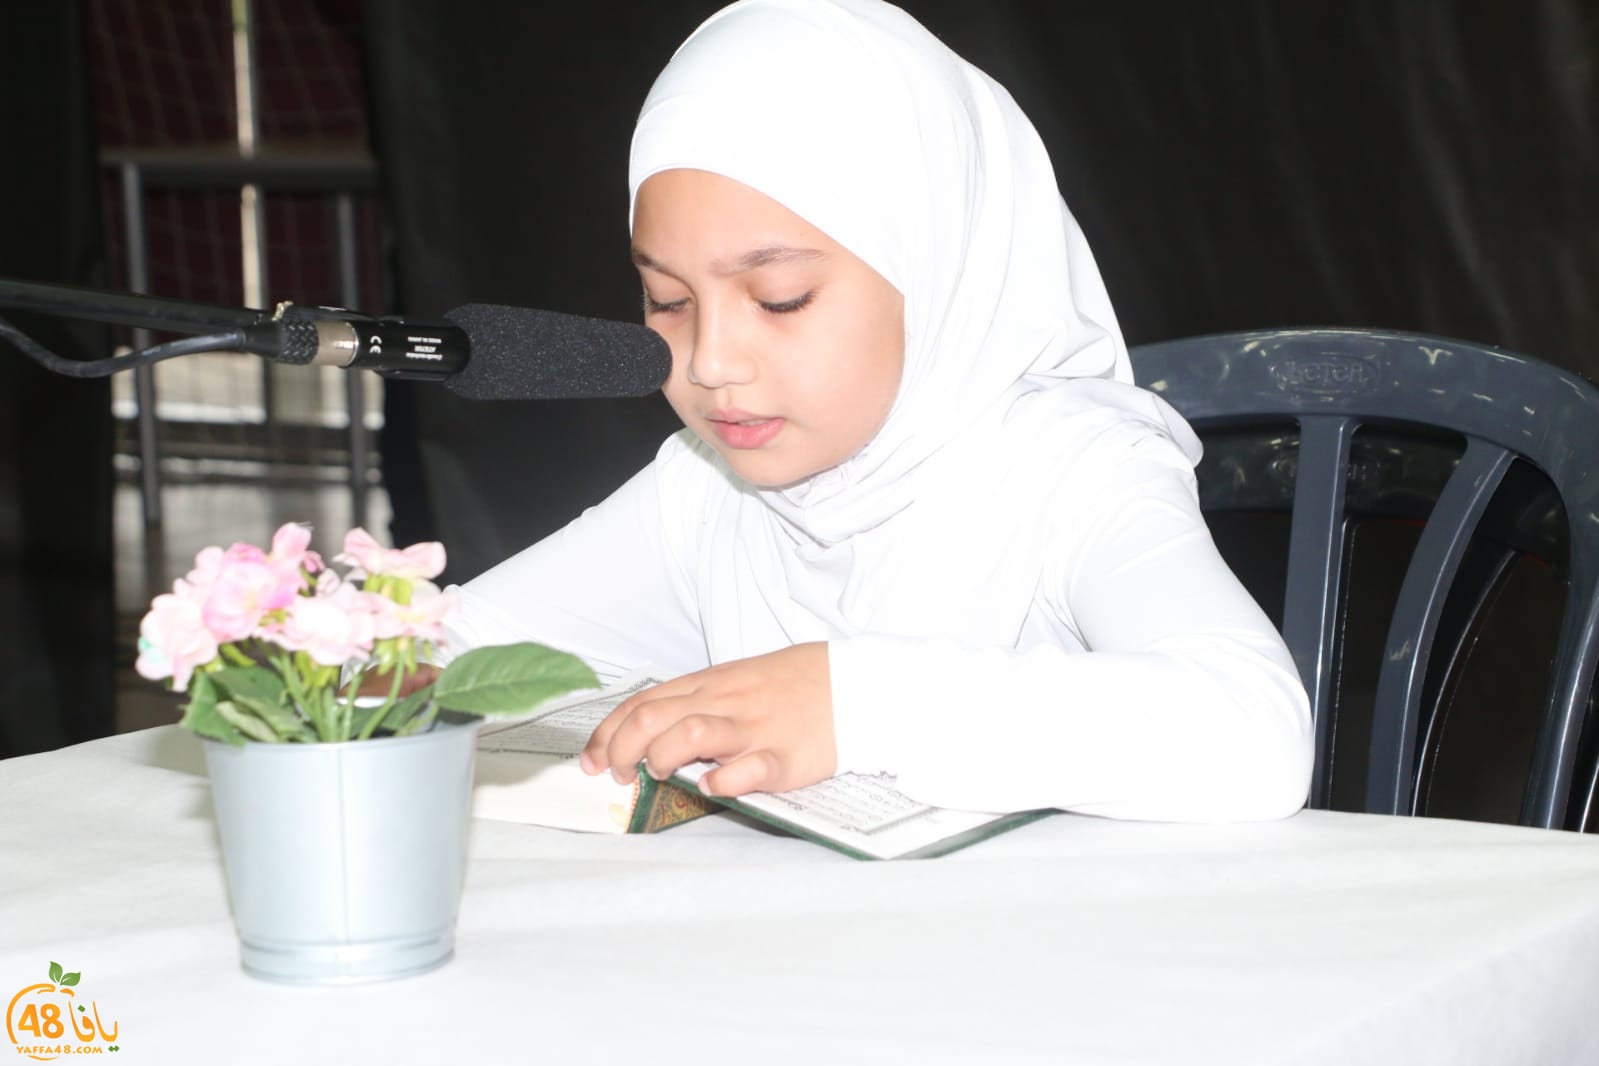 بالصور: مدرسة حسن عرفة الابتدائية تحتفل بتخريج الفوج الـ62 من طلابها